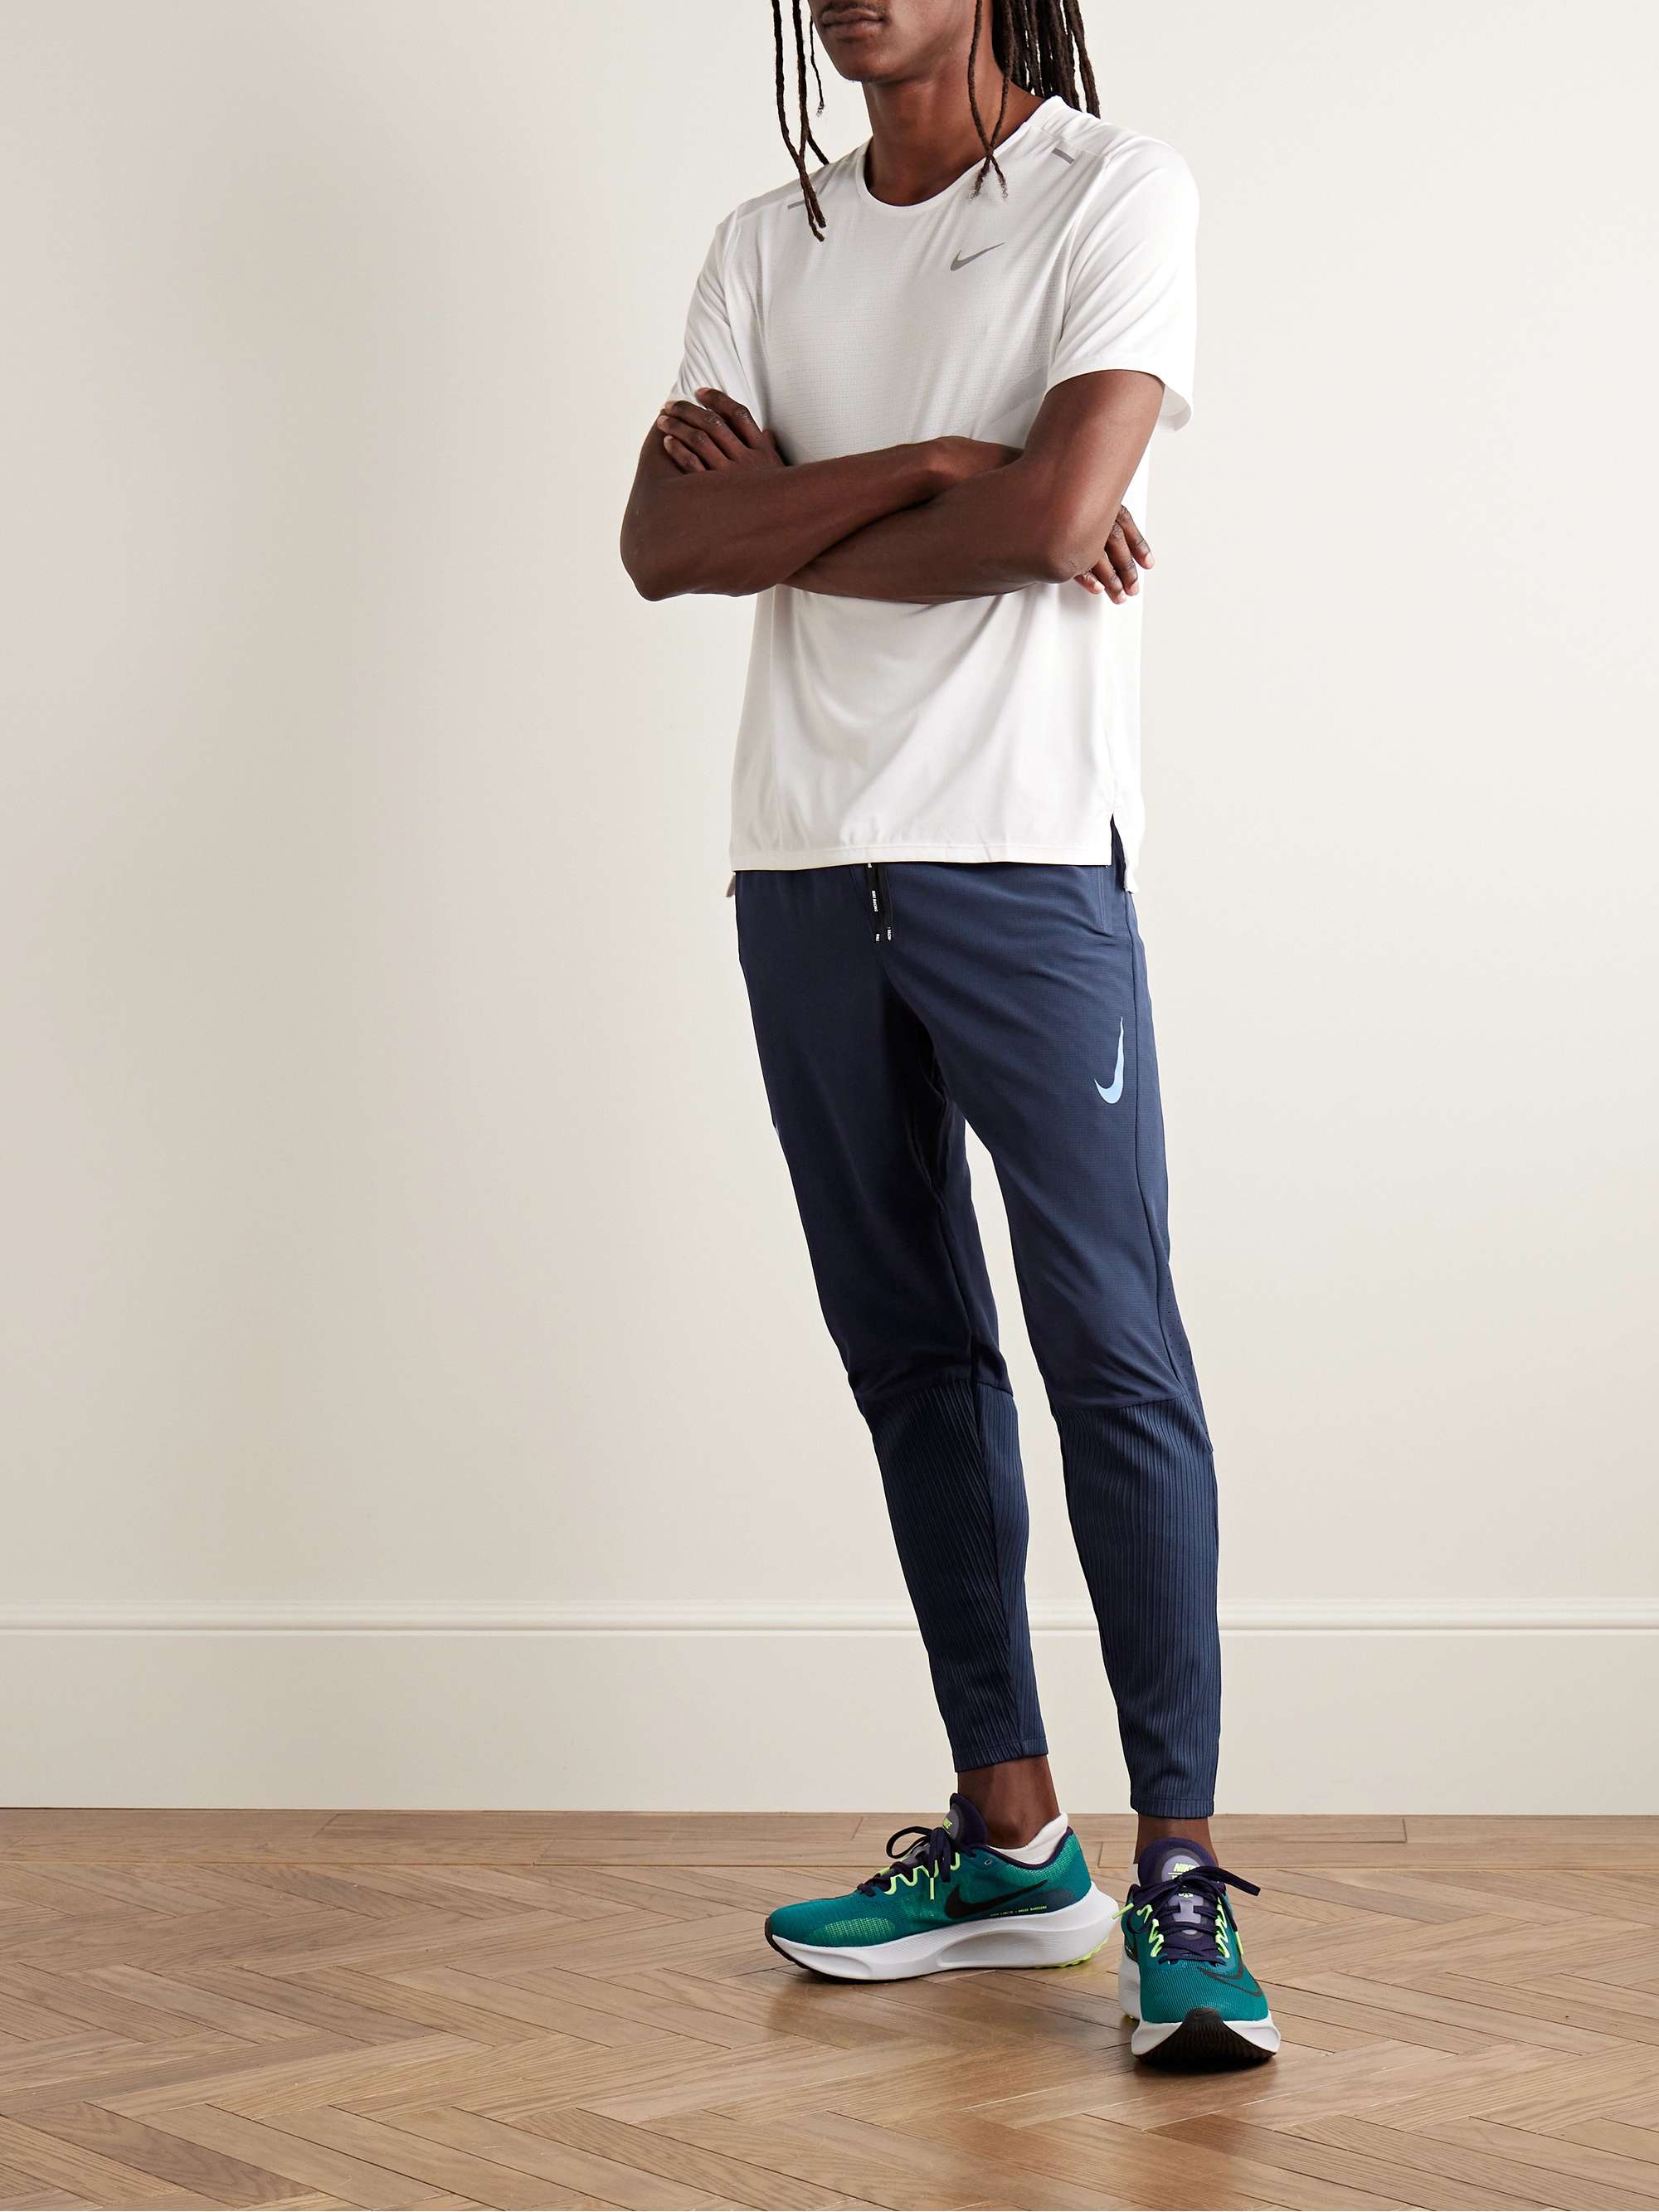 Ma Croix Mens Taped Track Pants Slim Skinny Fit Premium Stripe Joggers -  Walmart.com